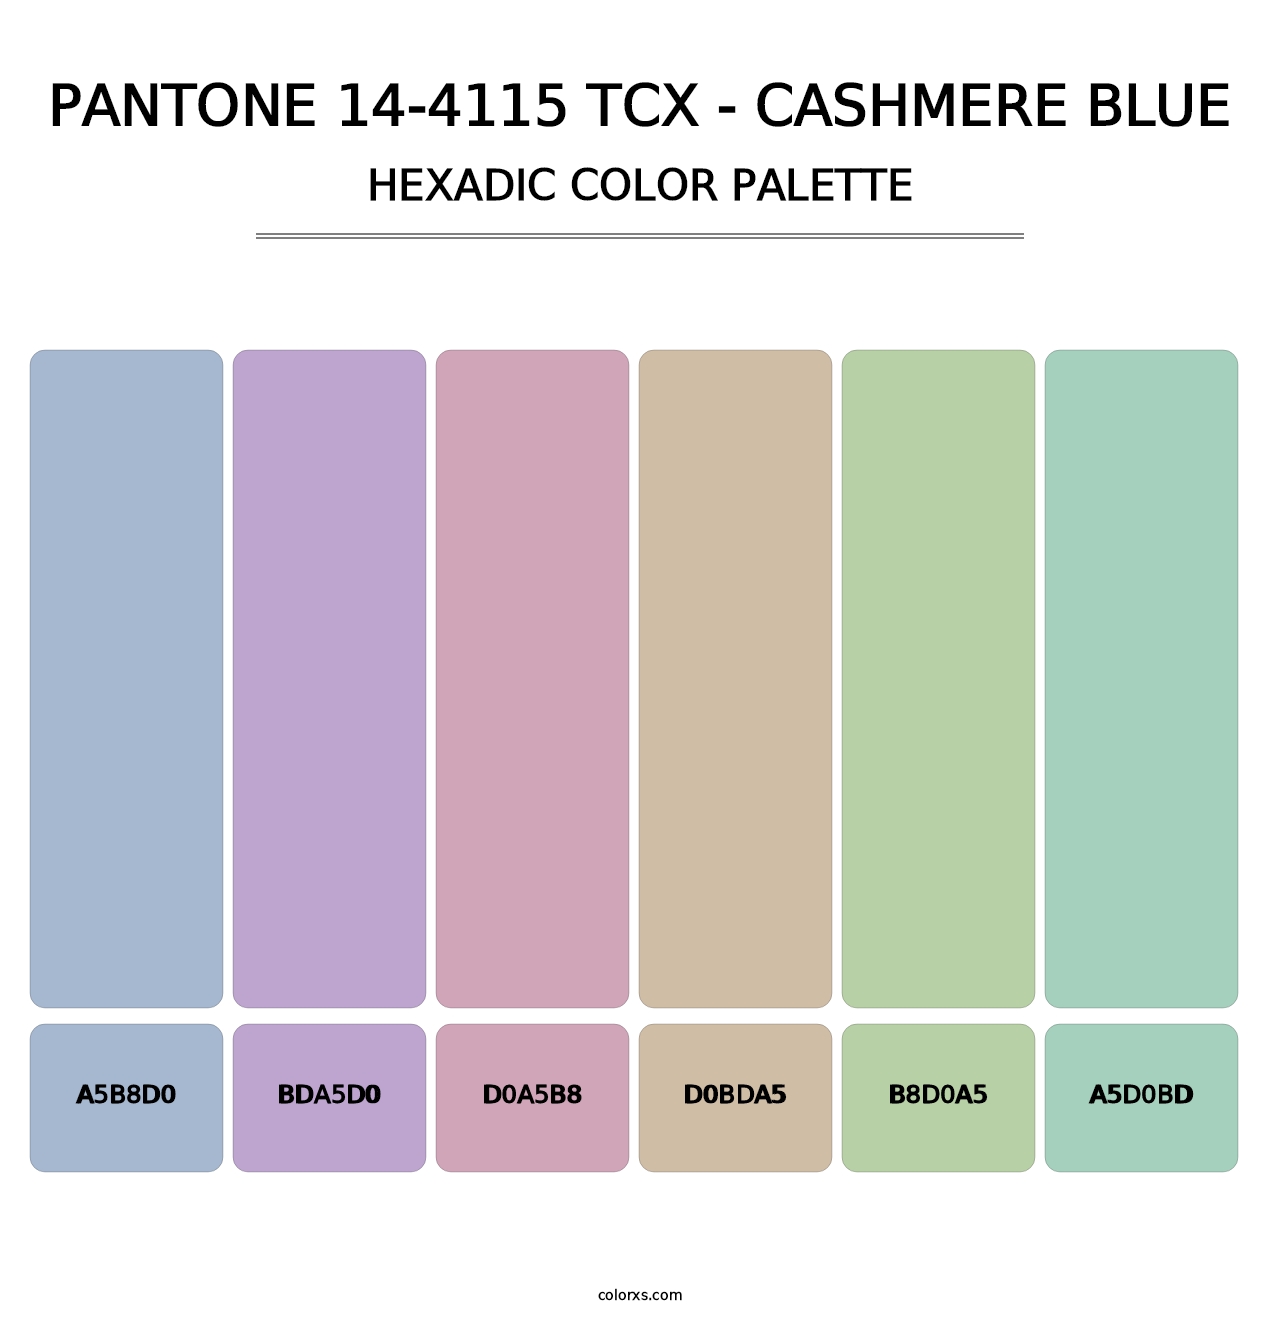 PANTONE 14-4115 TCX - Cashmere Blue - Hexadic Color Palette